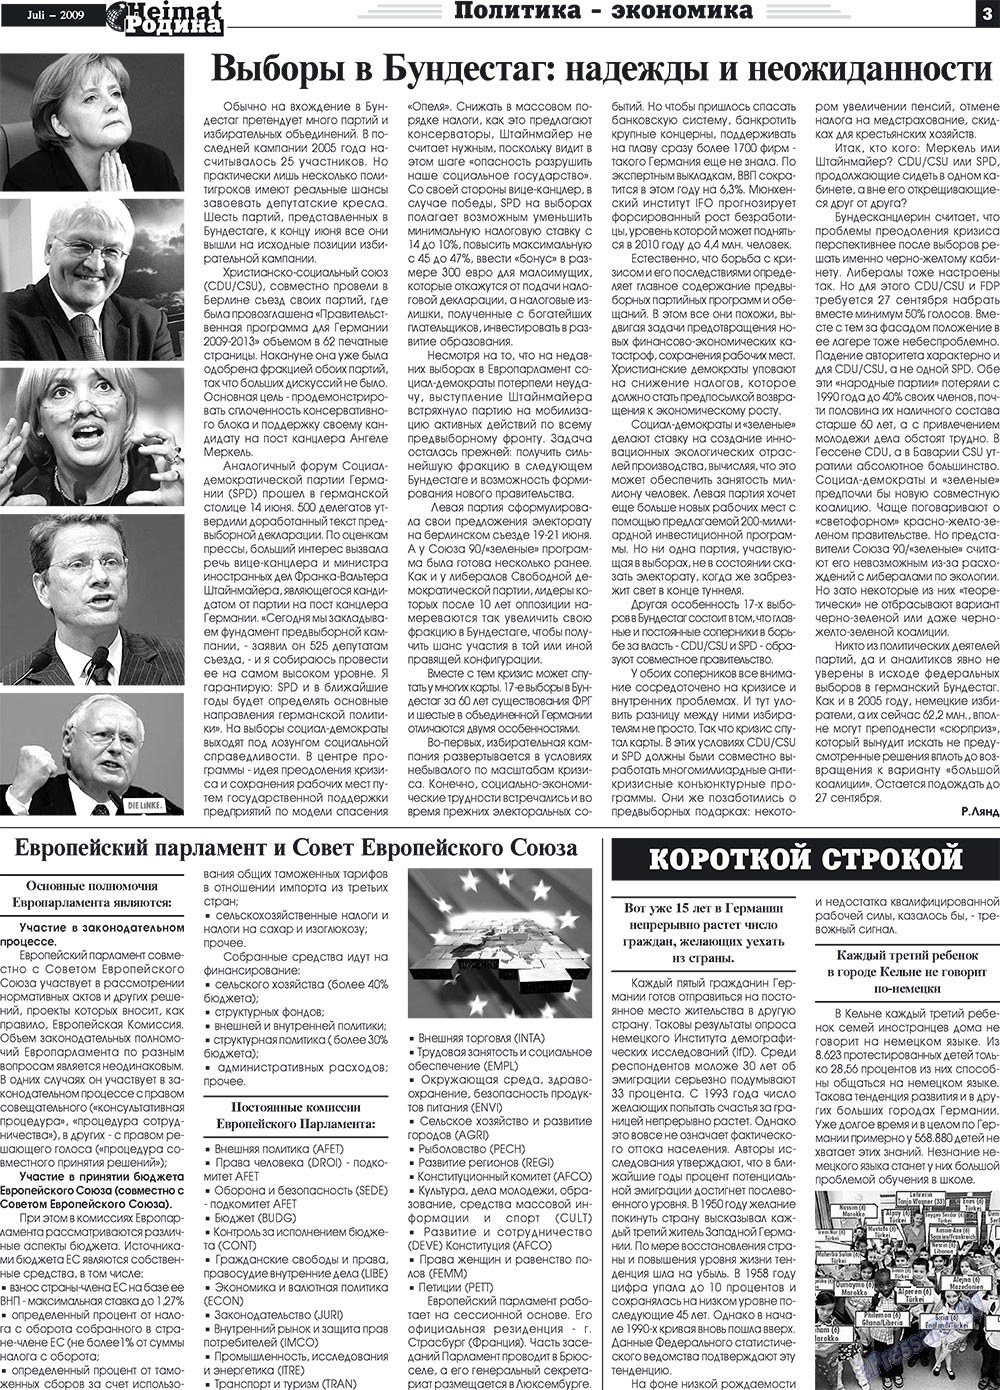 Heimat-Родина (газета). 2009 год, номер 7, стр. 3